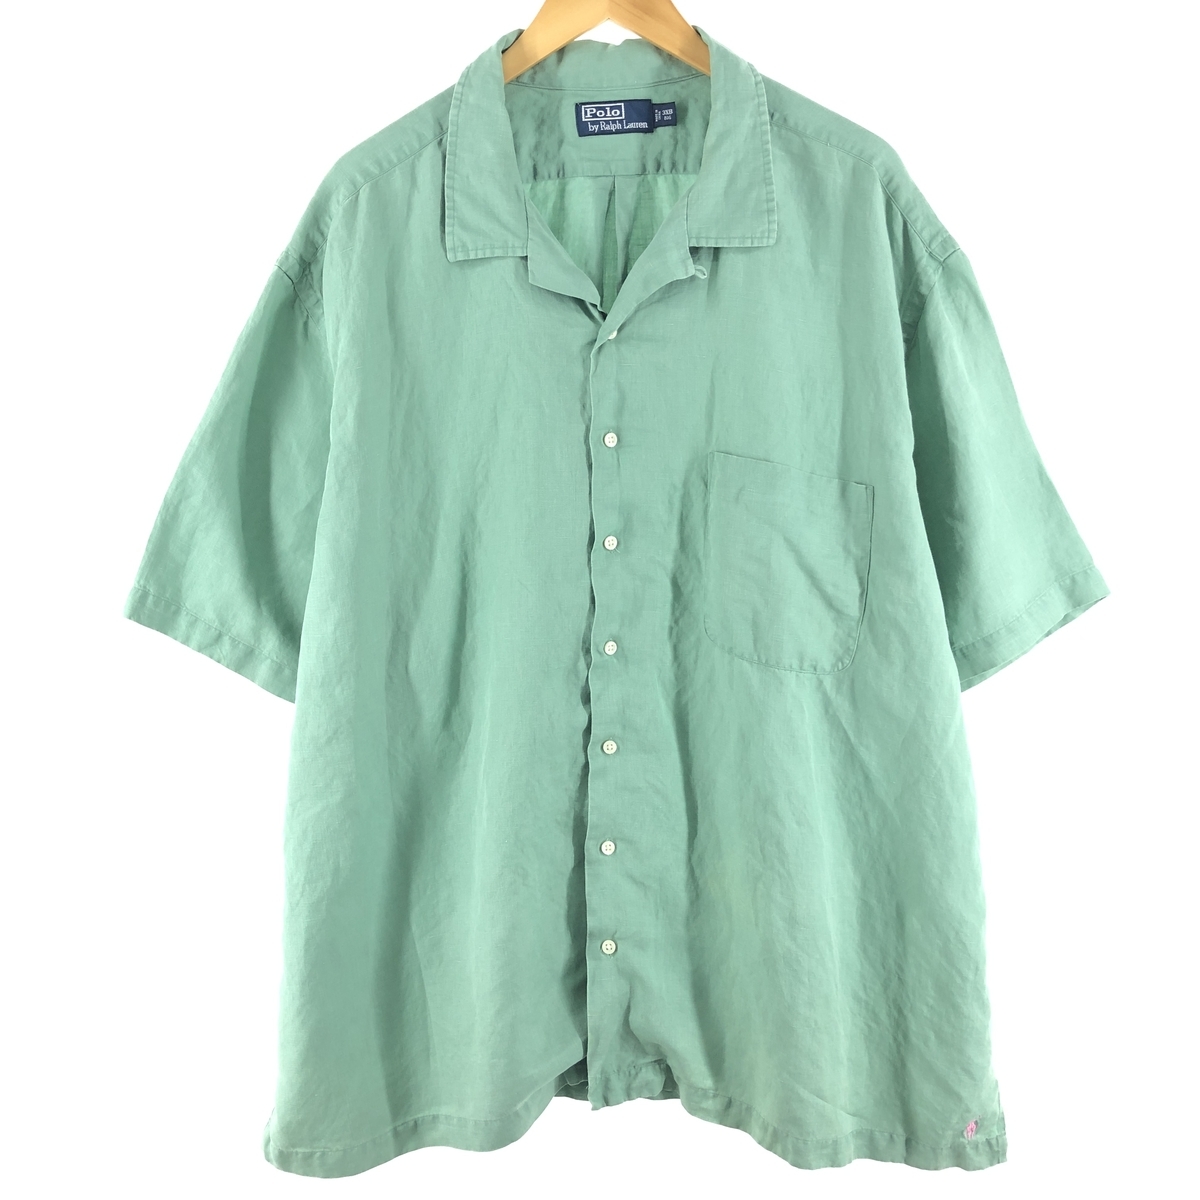 有名な高級ブランド 古着 /eaa358857 フリーサイズ ボックスシャツ リネンシルクシャツ オープンカラー 半袖 Lauren Ralph ラルフローレン ビッグサイズ XLサイズ以上